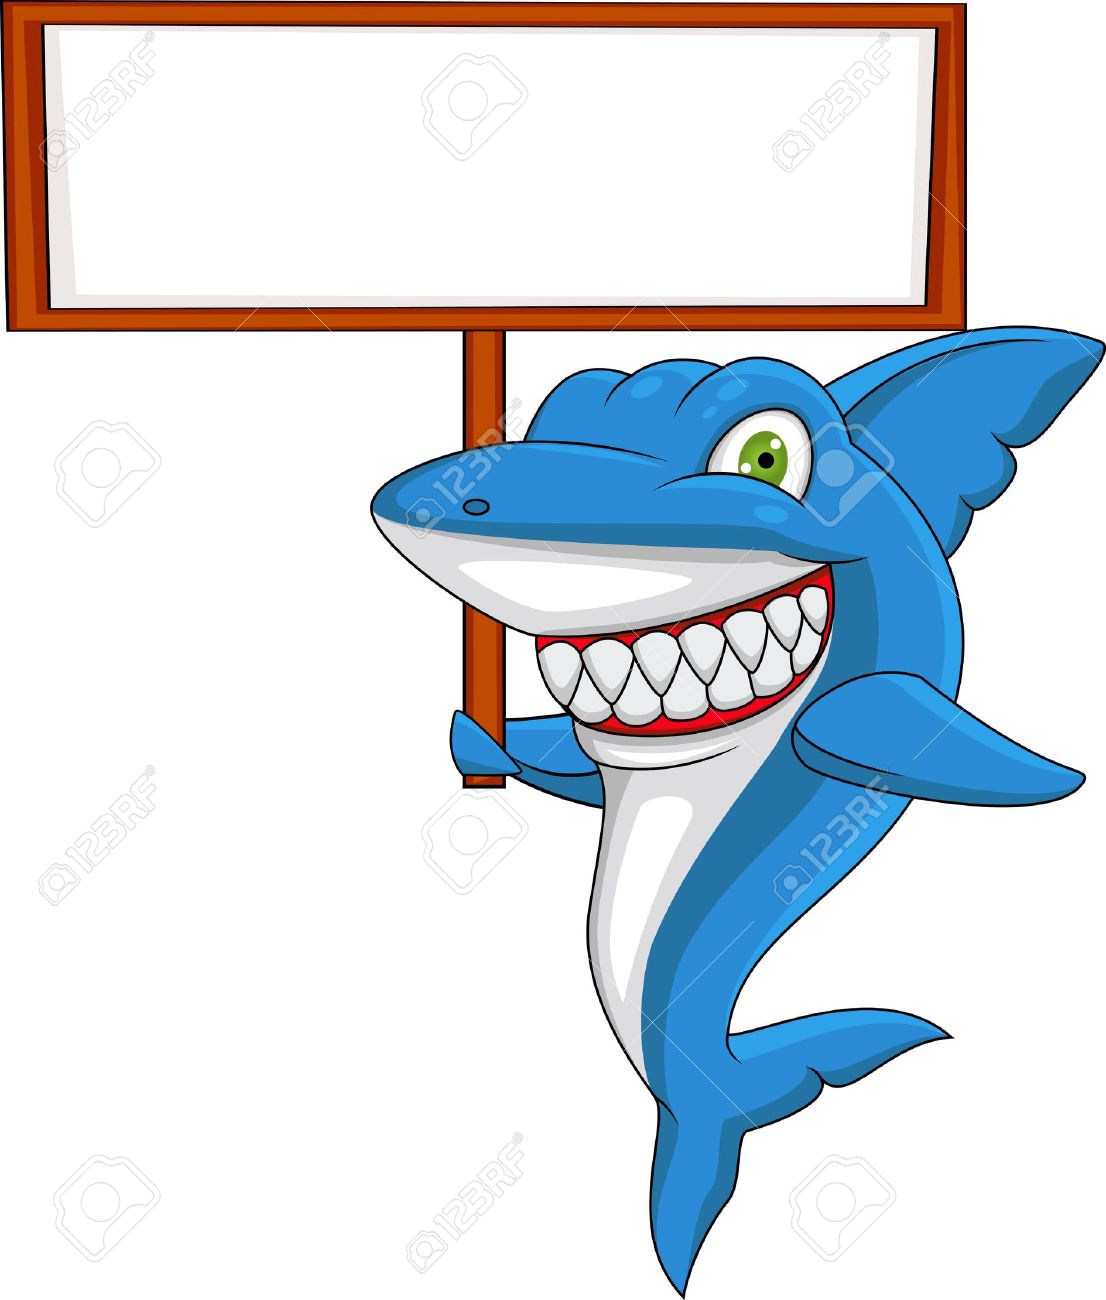 13396204-Shark-with-blank-sign--Stock-Vector-cartoon.jpg